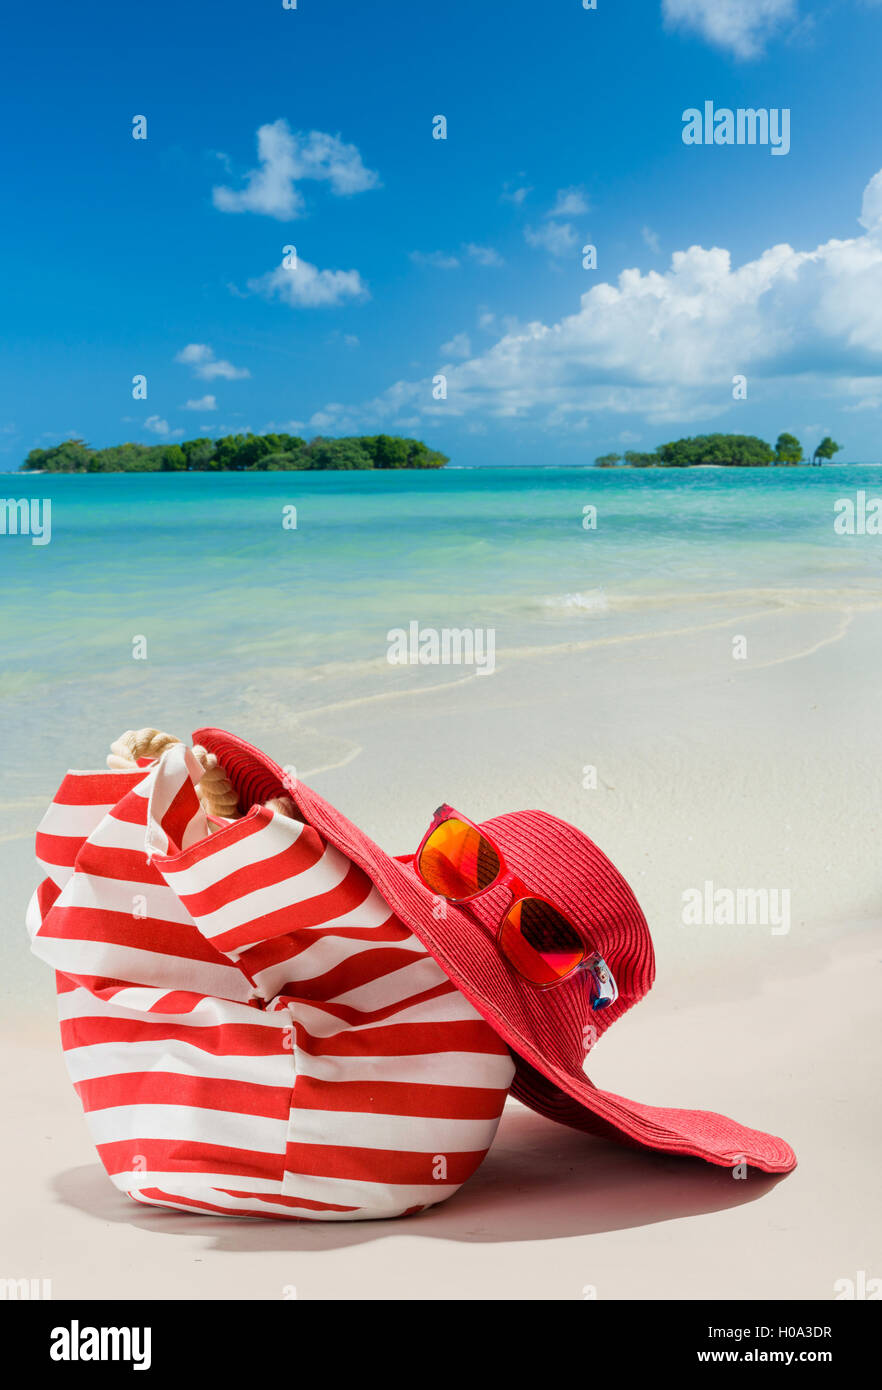 Sommer Strand-Tasche mit rotem Strohhut und Sonnenbrille am Sandstrand Stockfoto